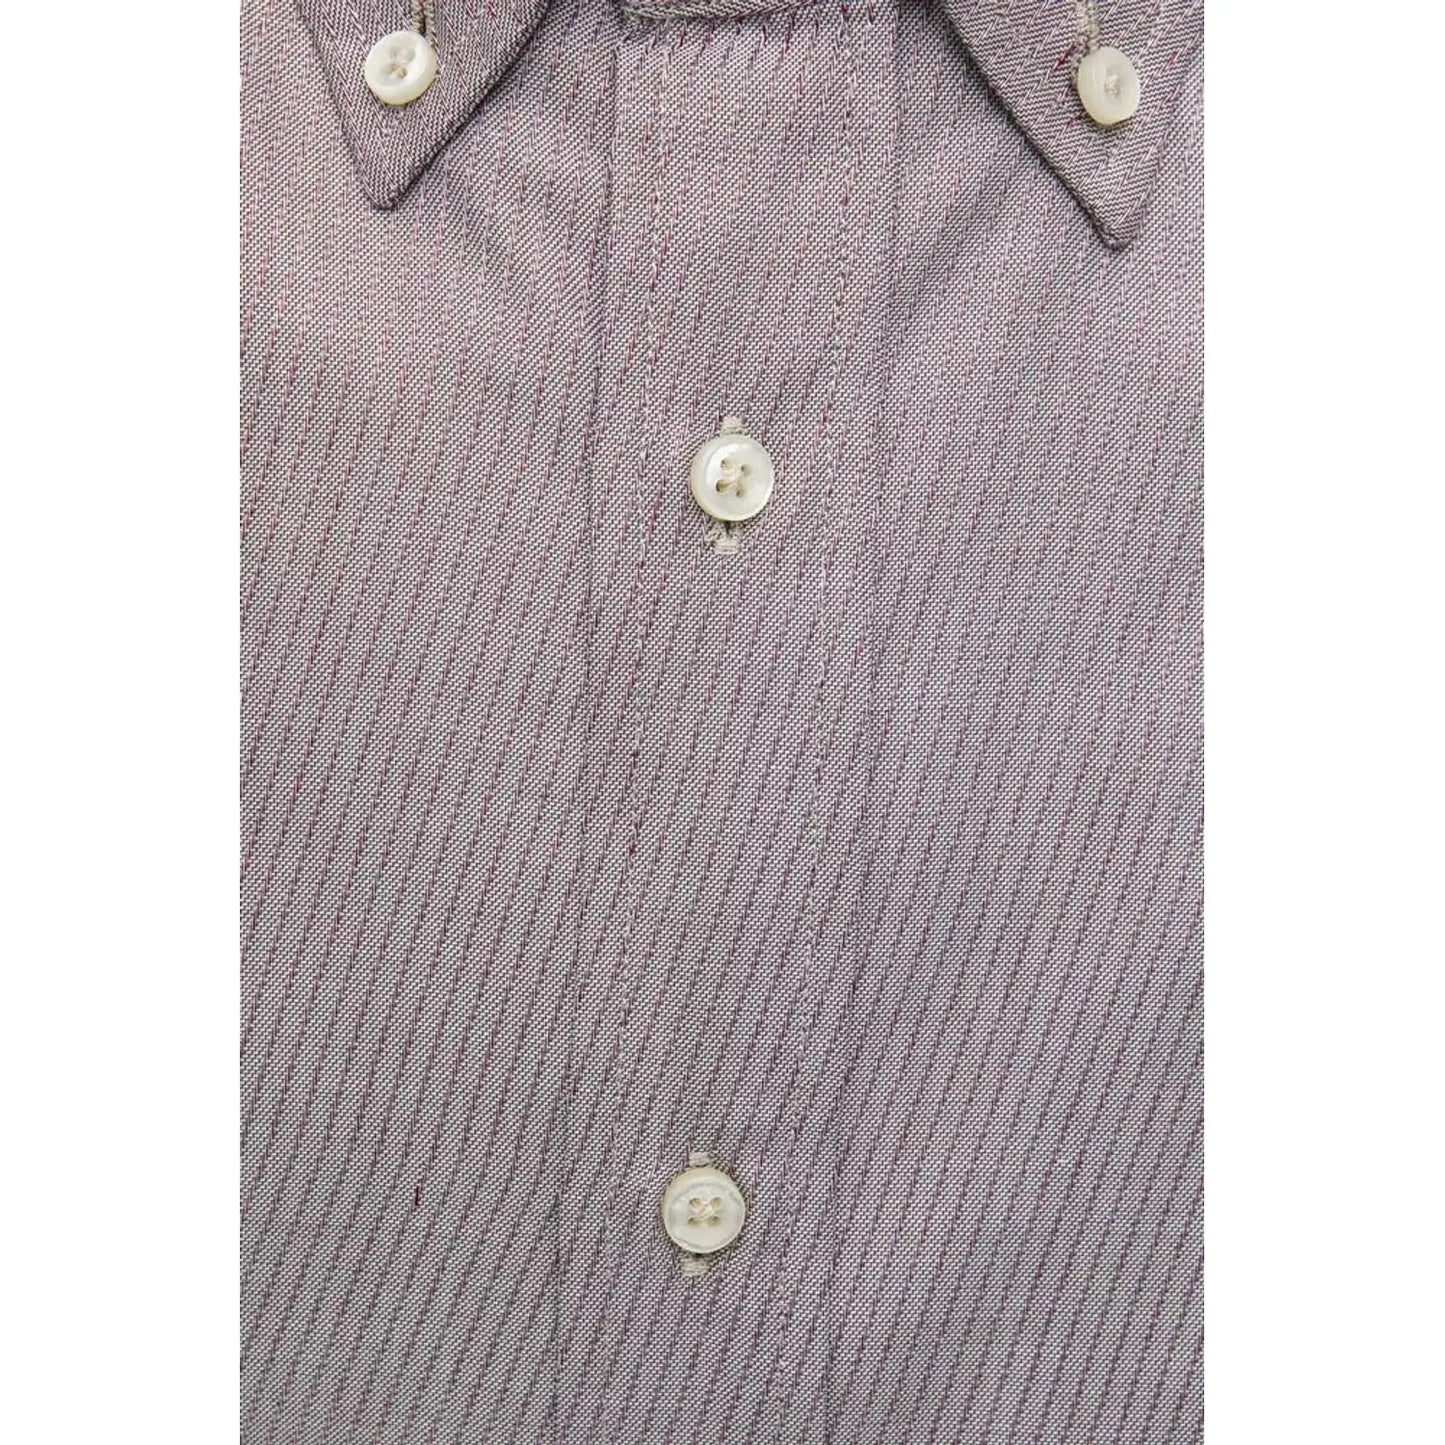 Robert Friedman Beige Cotton Button Down Men's Shirt beige-cotton-shirt-6 stock_product_image_20453_558837353-15-c3a2835b-fff.webp